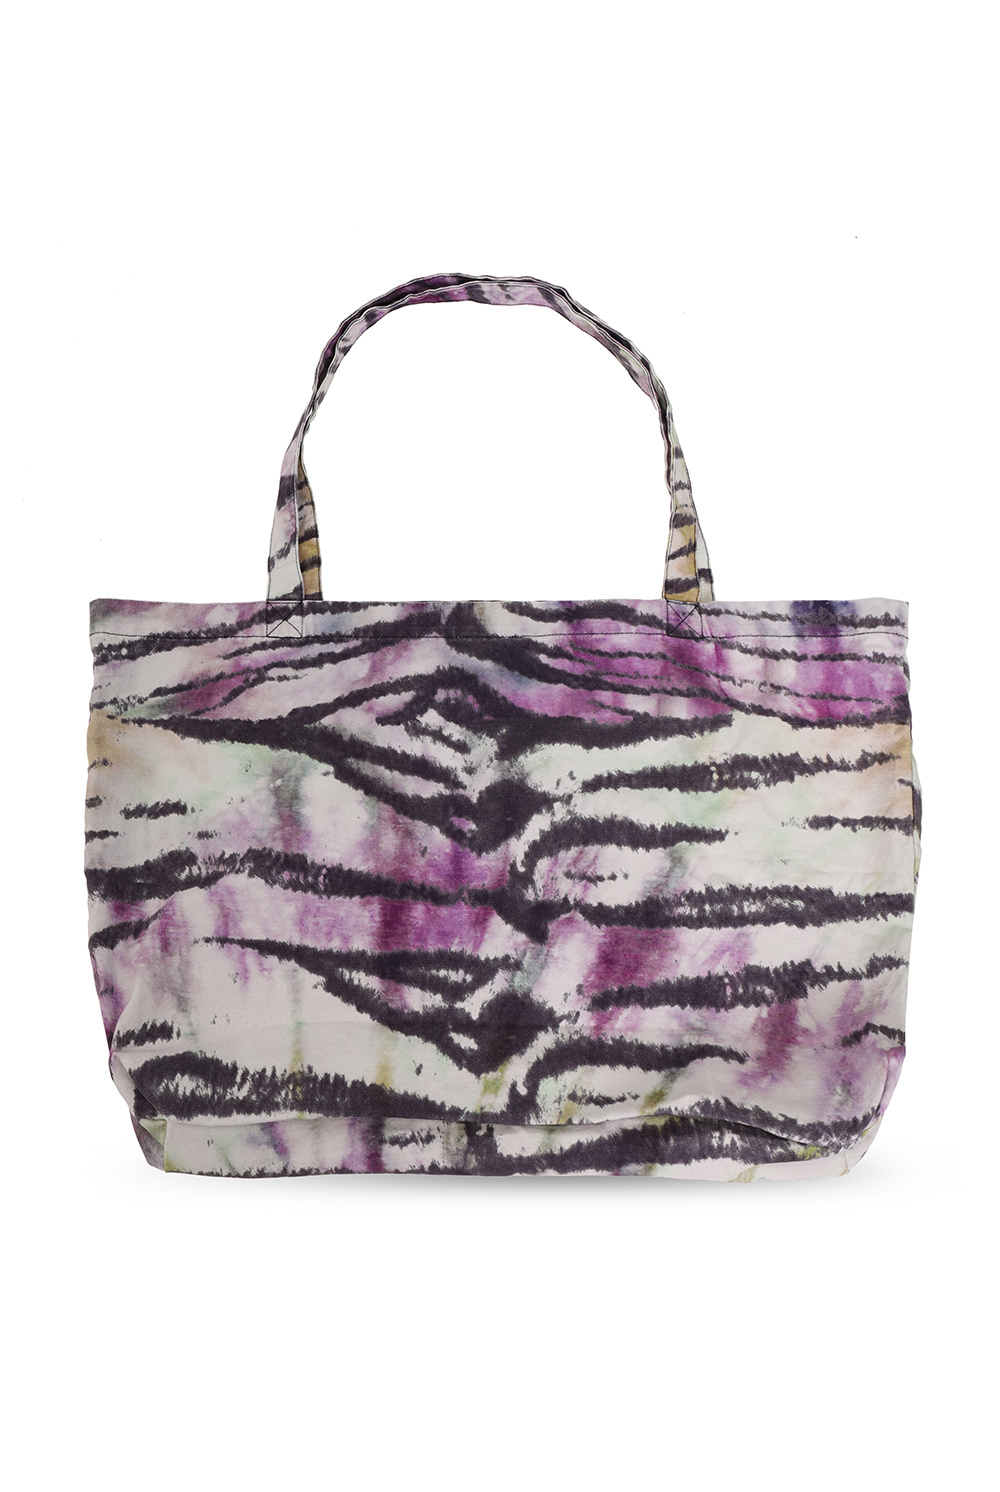 AllSaints ‘Tiger’ shopper Limited bag